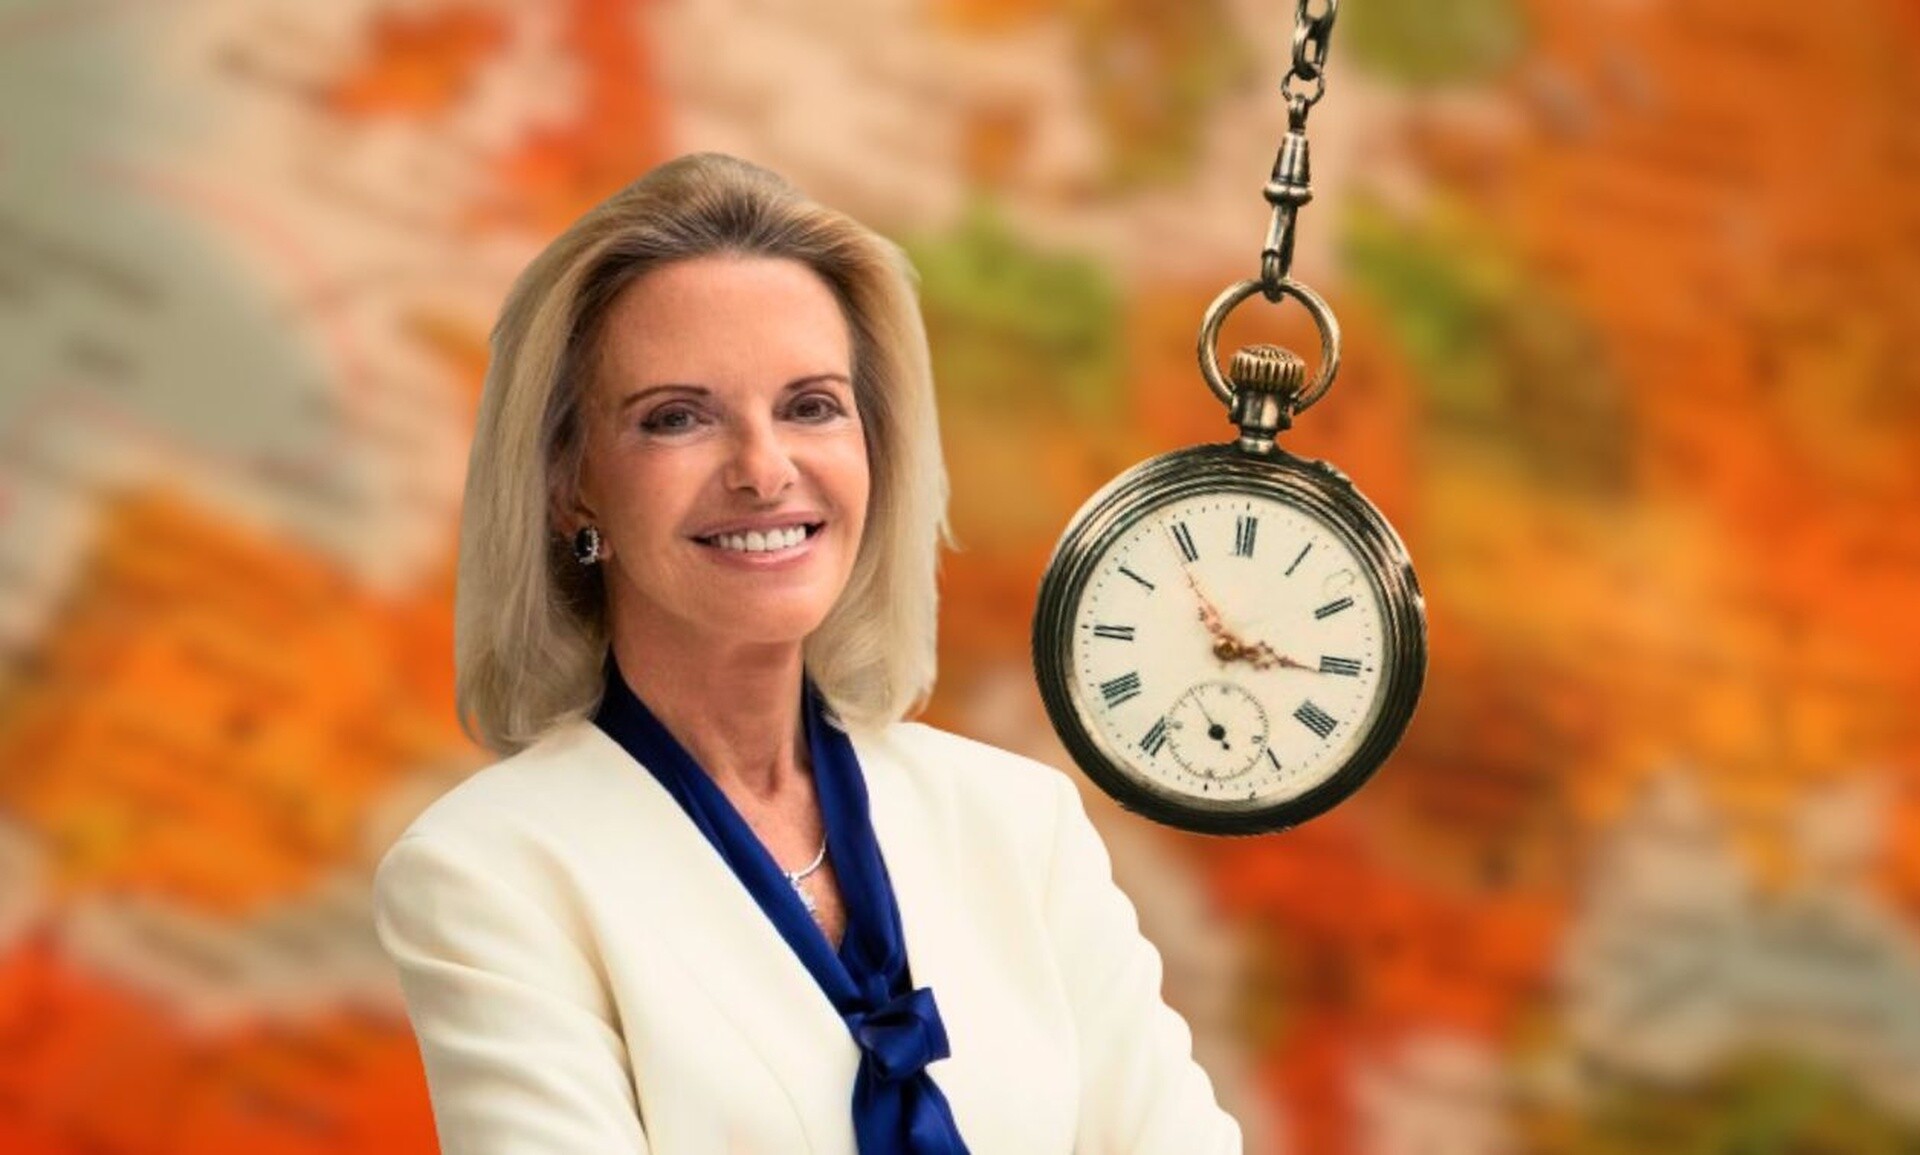 Αλλαγή ώρας: Γιατί δεν καταργείται - Η Ευρωβουλευτής Ελίζα Βόζεμπεργκ απαντά στο Newsbomb.gr